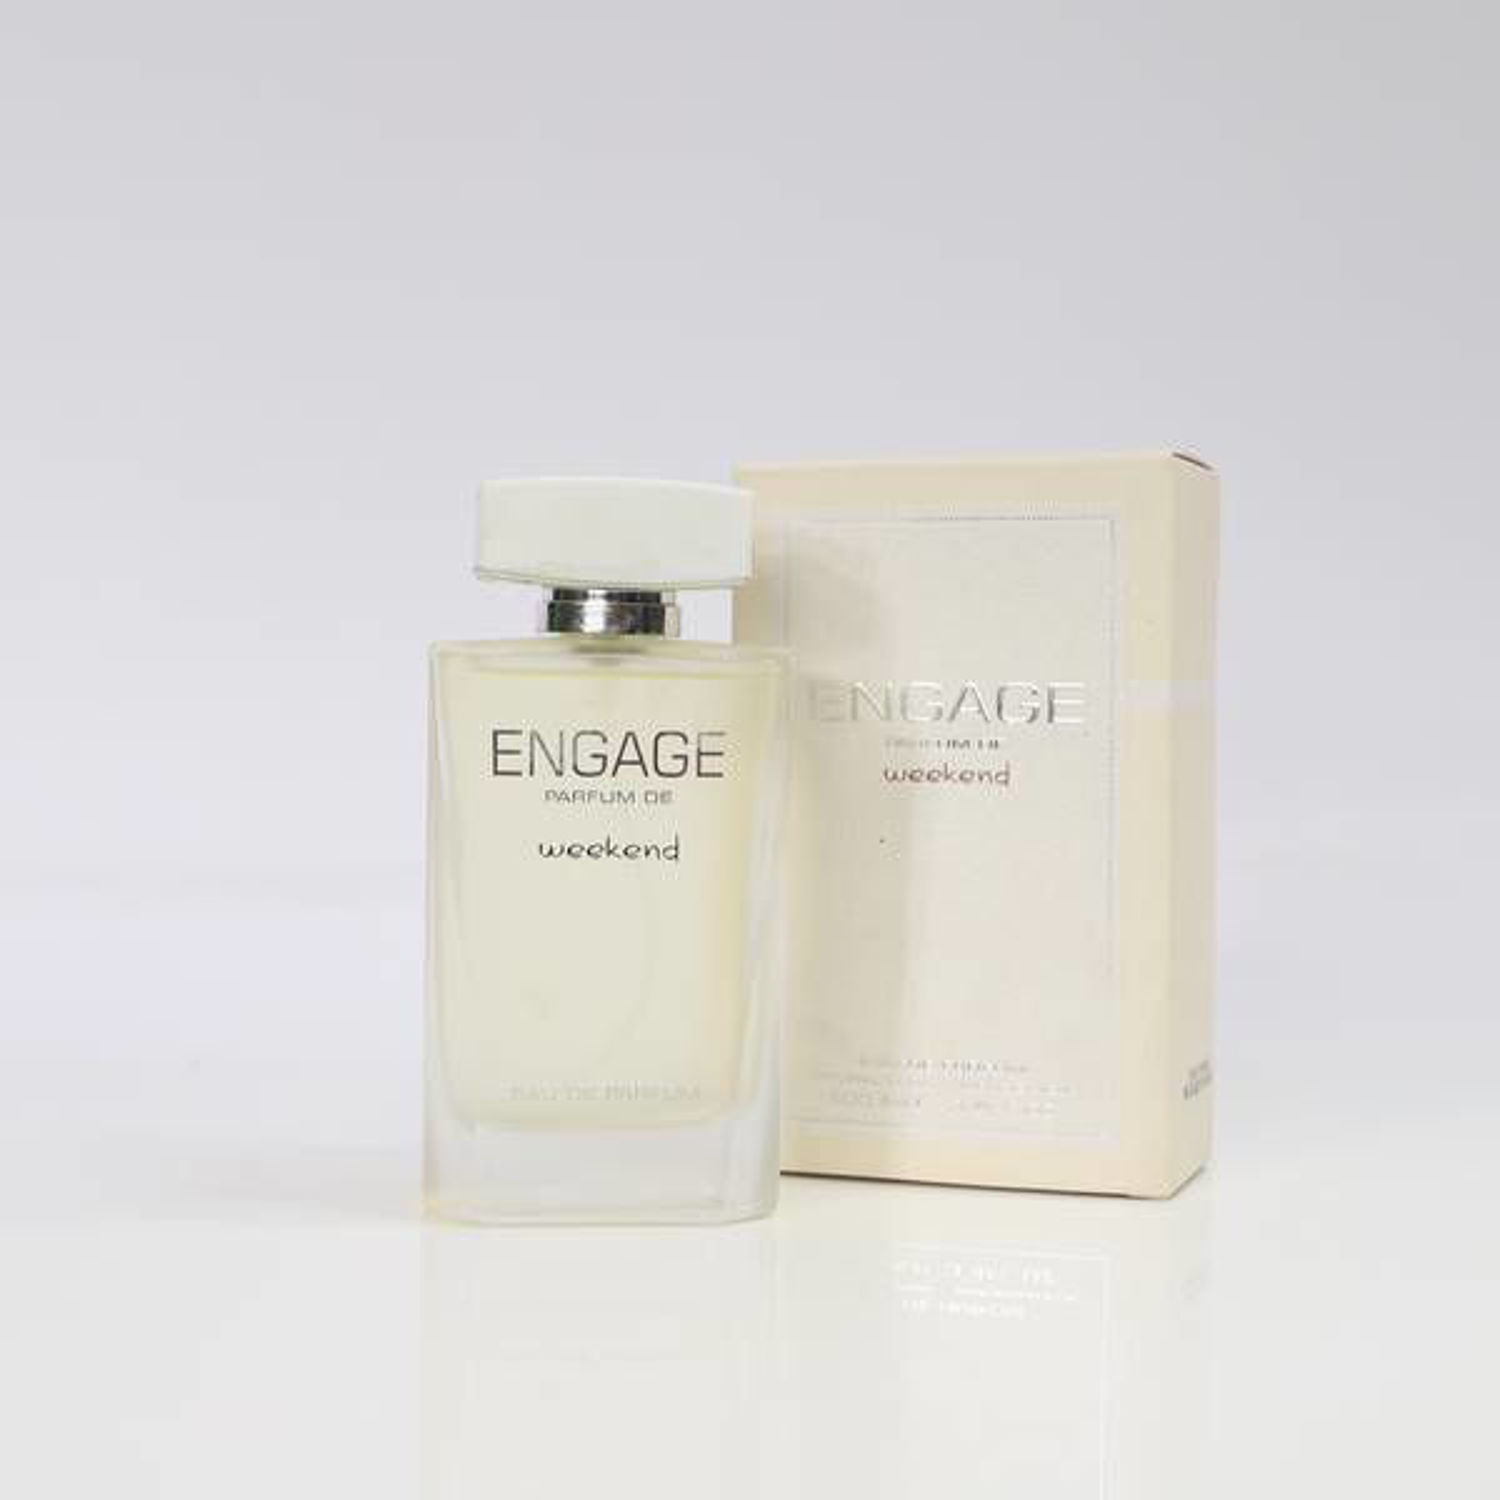 Hemani Engage Weekend Perfume 100ml